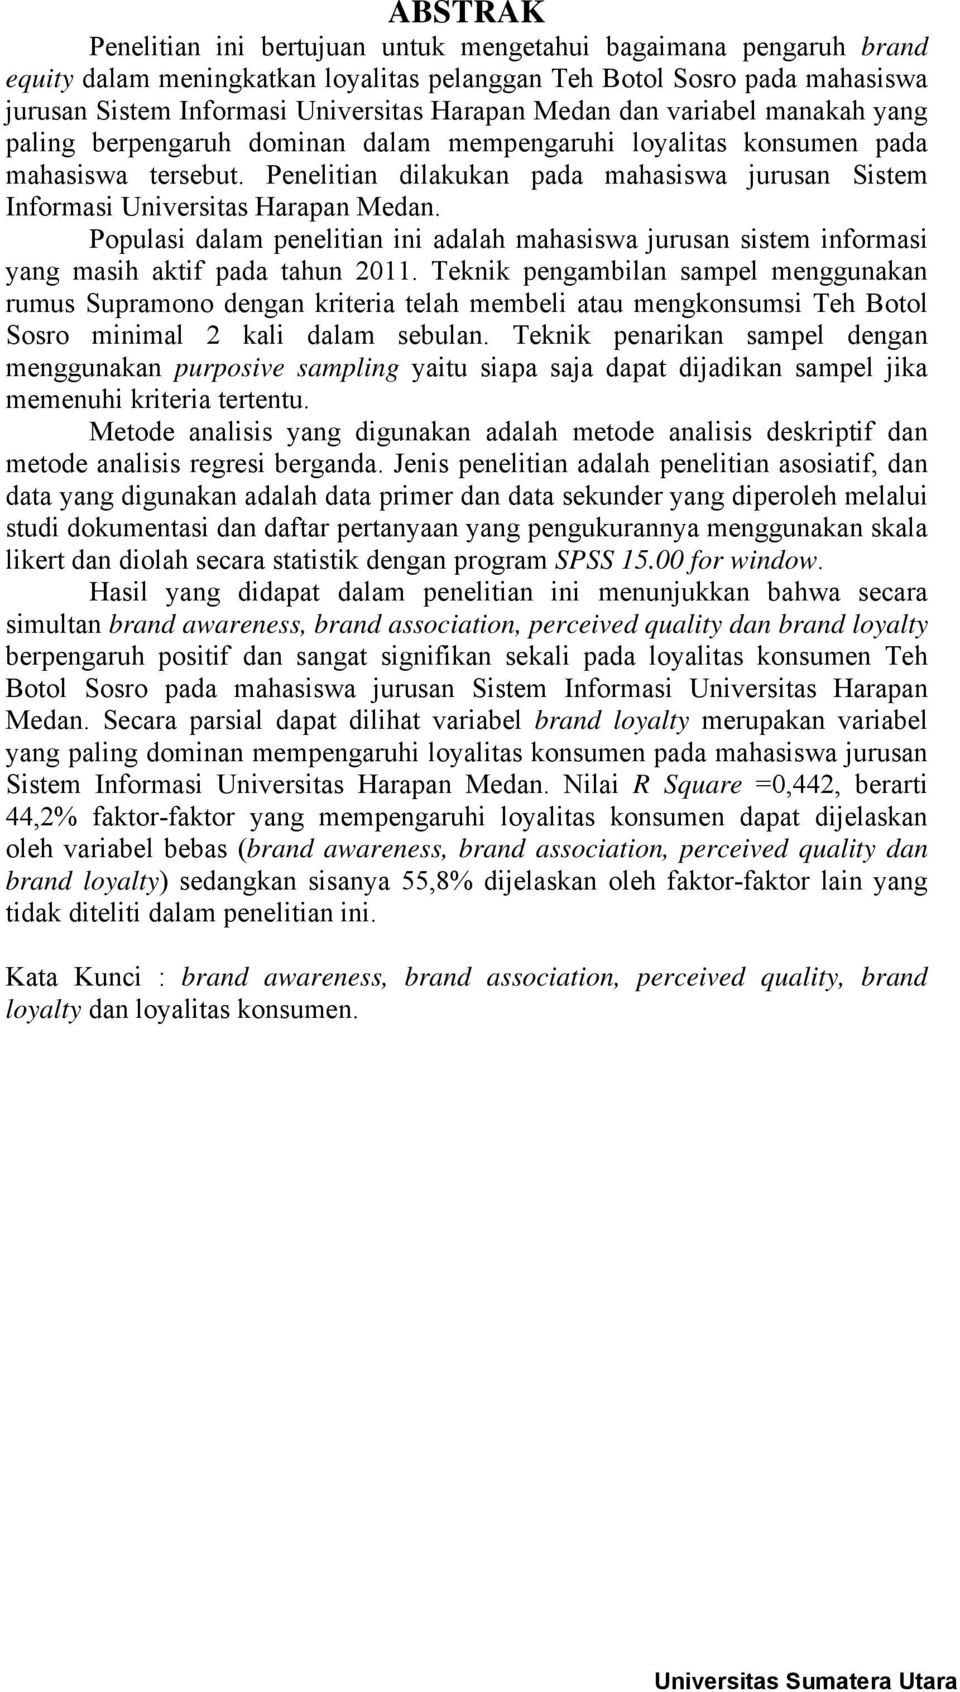 Penelitian dilakukan pada mahasiswa jurusan Sistem Informasi Universitas Harapan Medan. Populasi dalam penelitian ini adalah mahasiswa jurusan sistem informasi yang masih aktif pada tahun 2011.